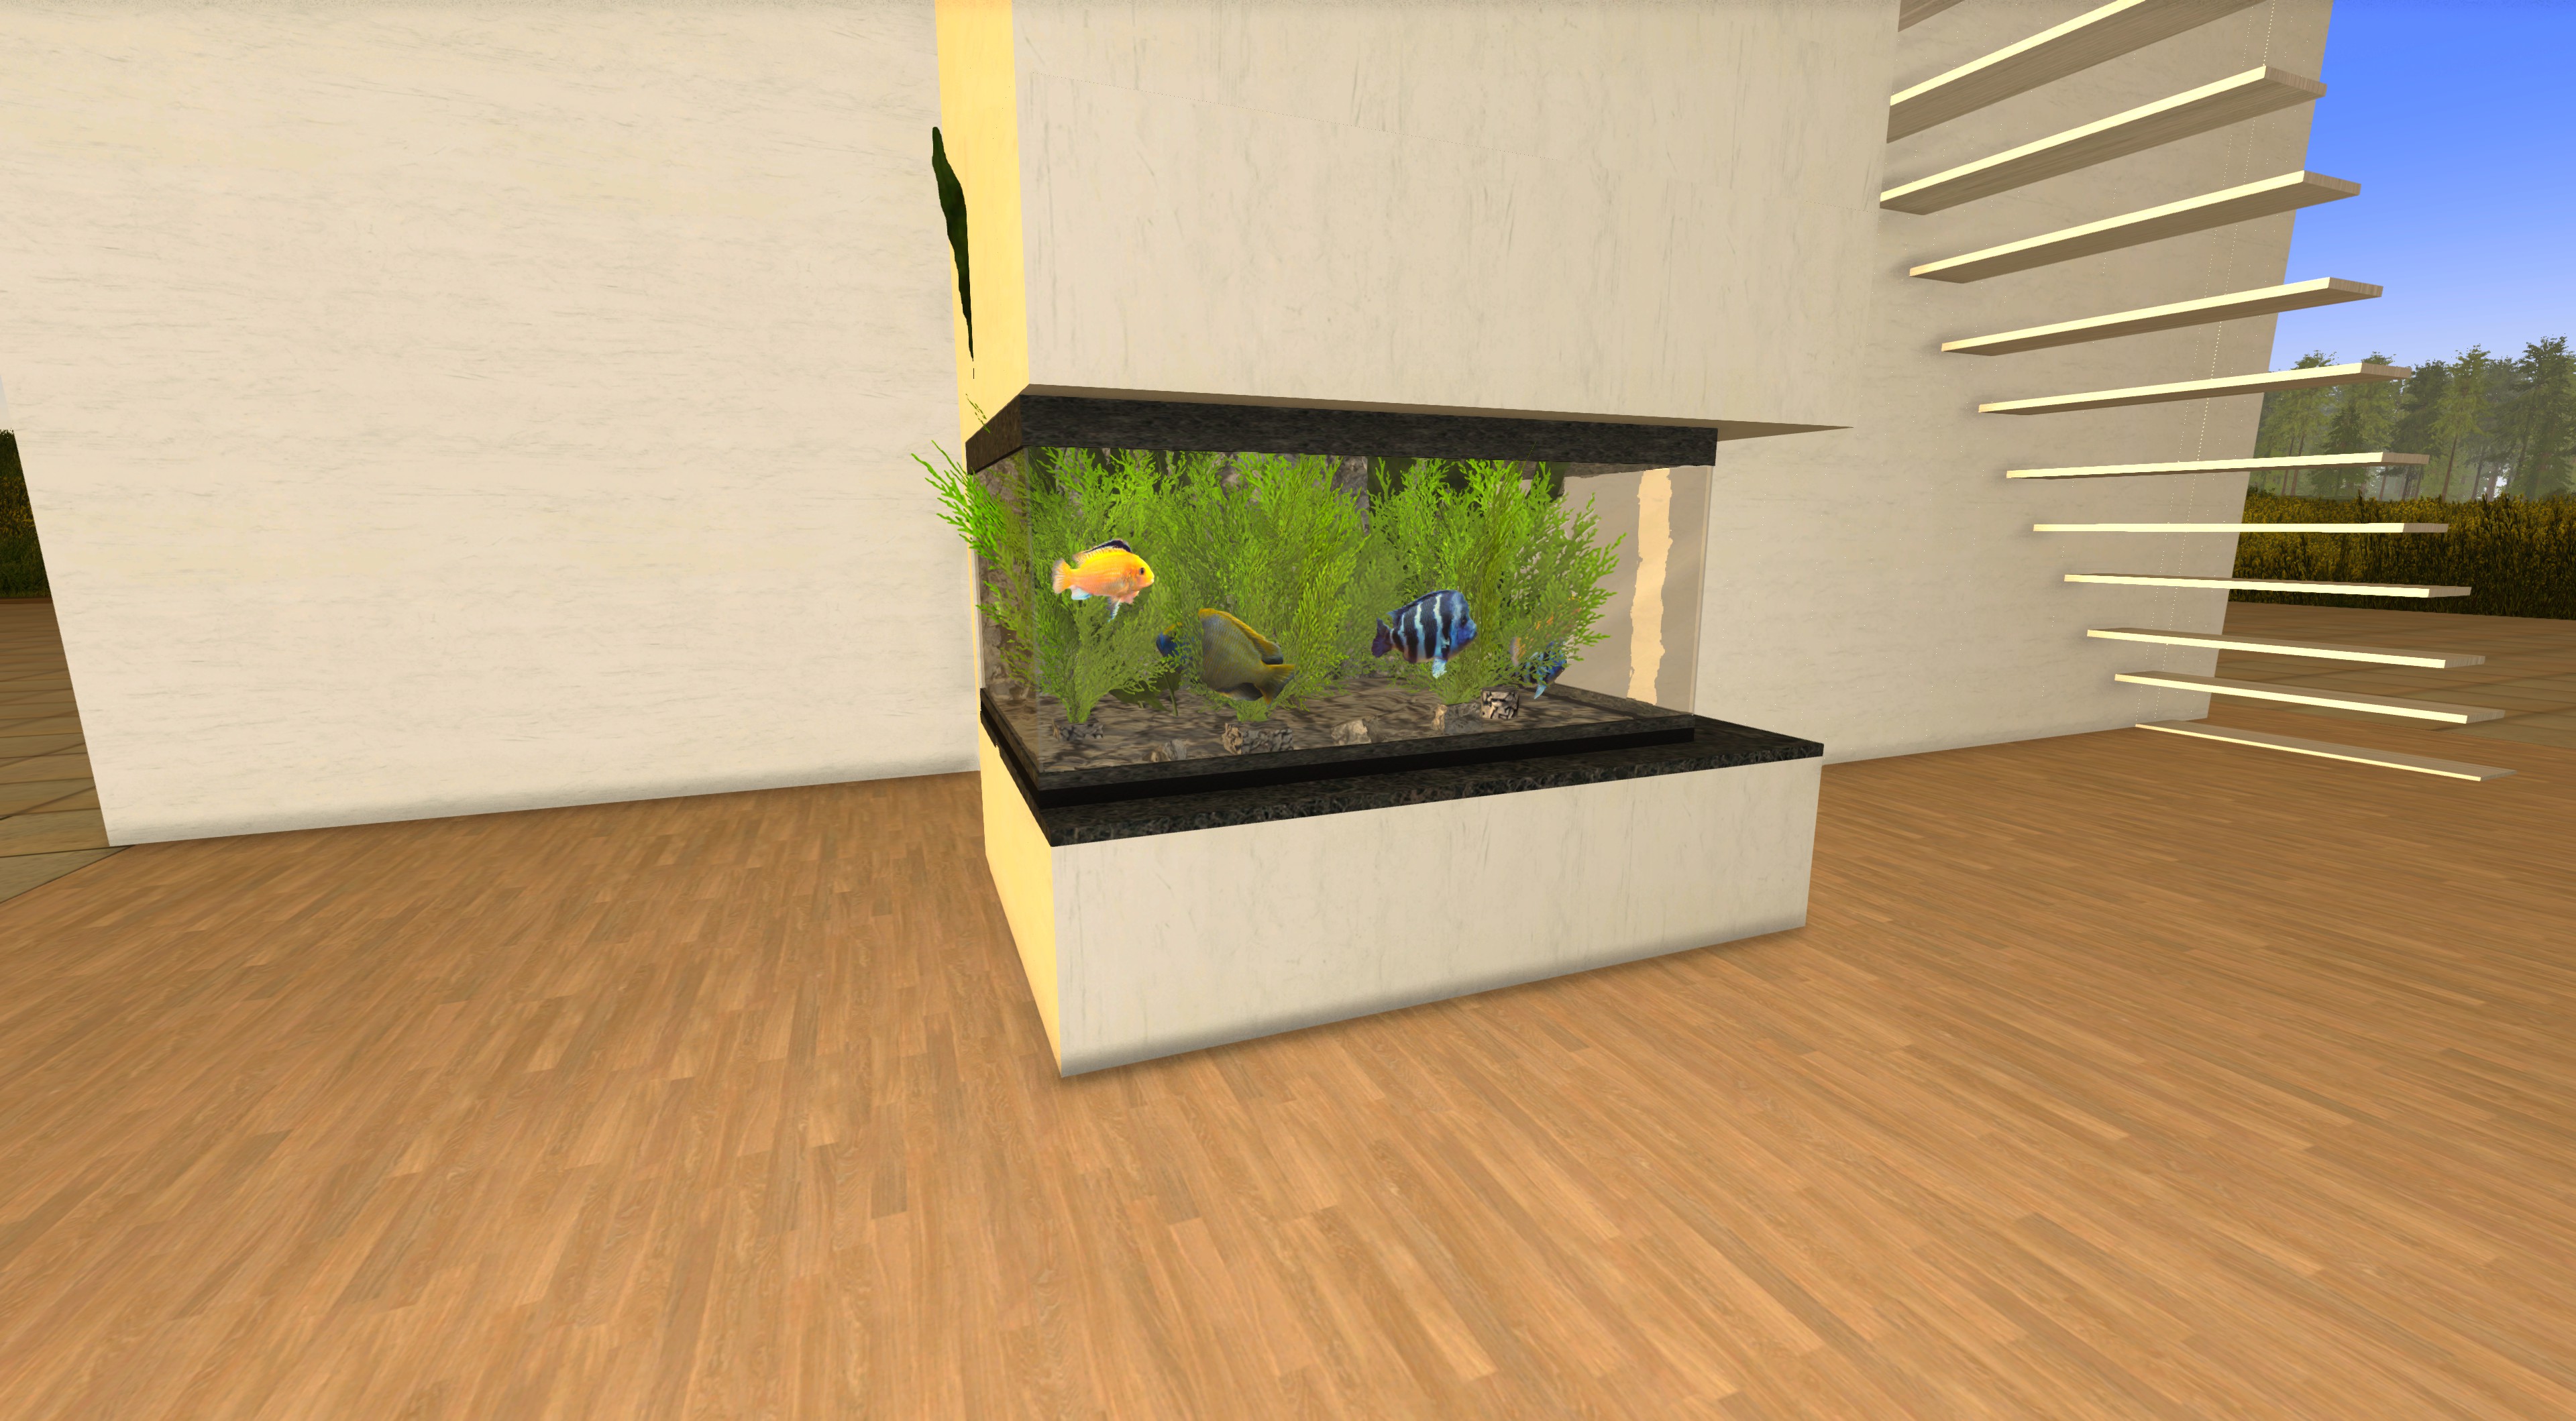  Contemporary Aquarium for Small Space